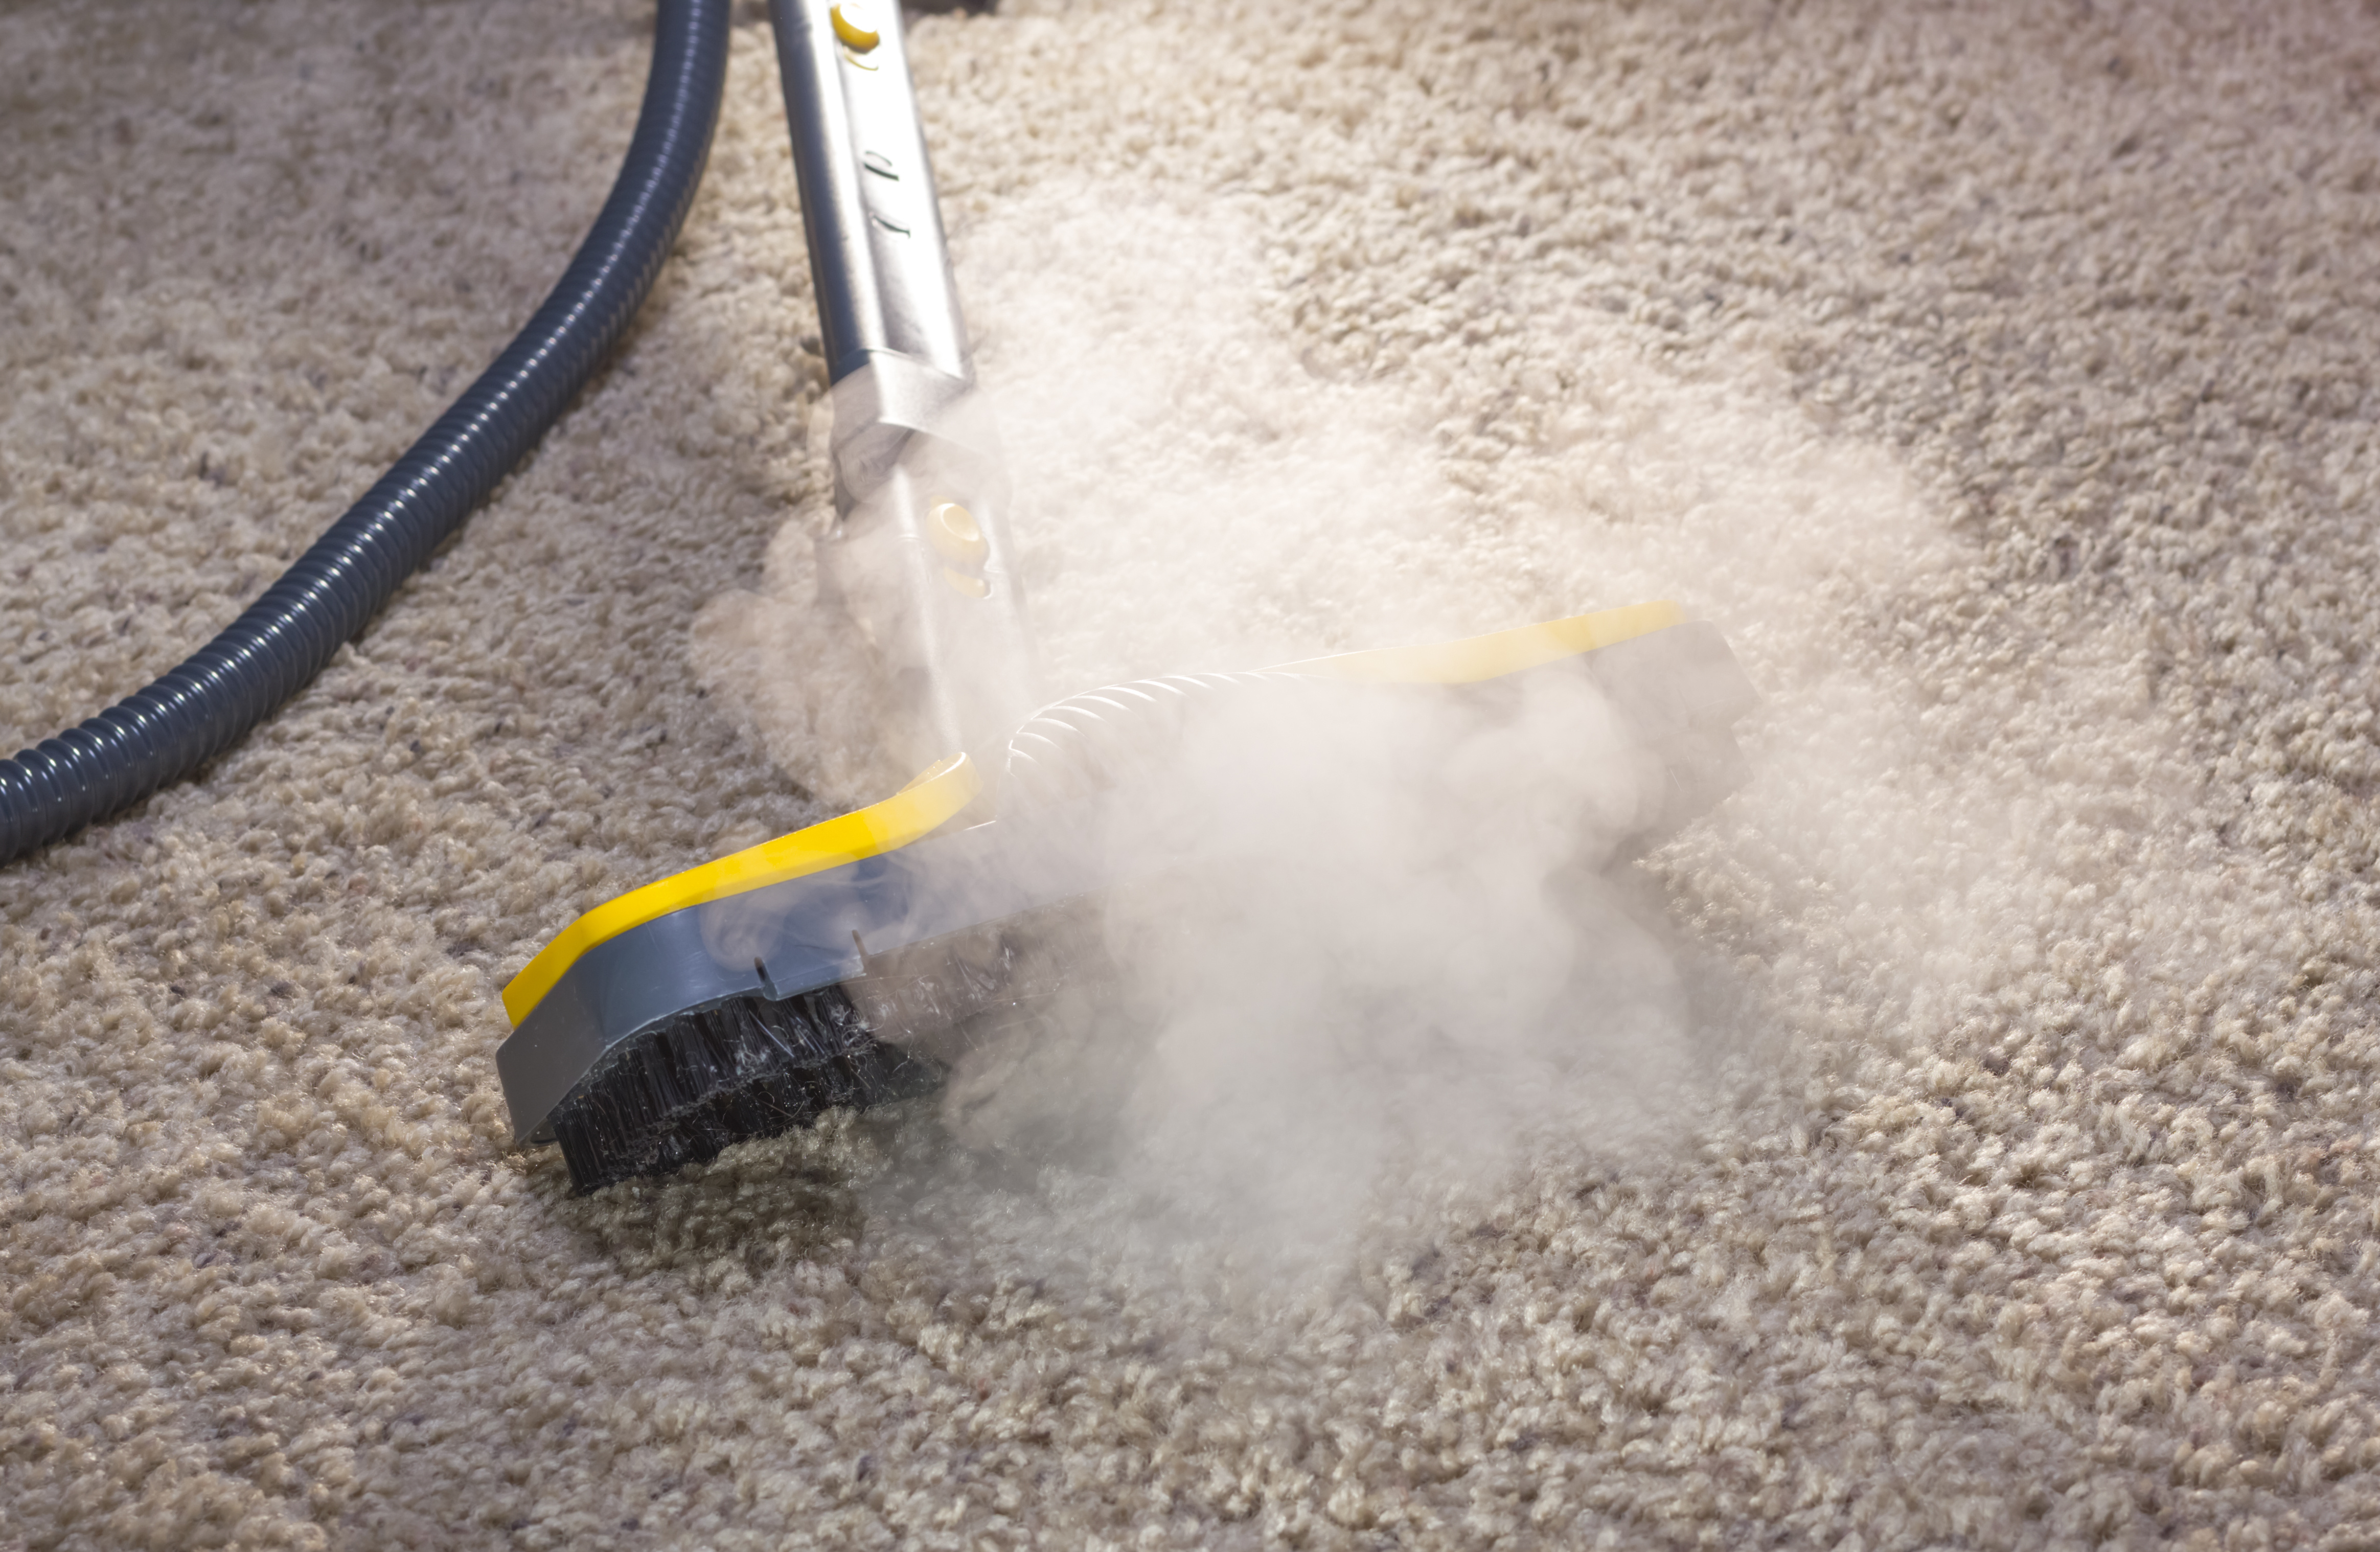 Пыль метод очистки. Пароочиститель для ковров. Уборка пыли. Чистка ковровых покрытий. Пароочиститель для мебели и ковров.